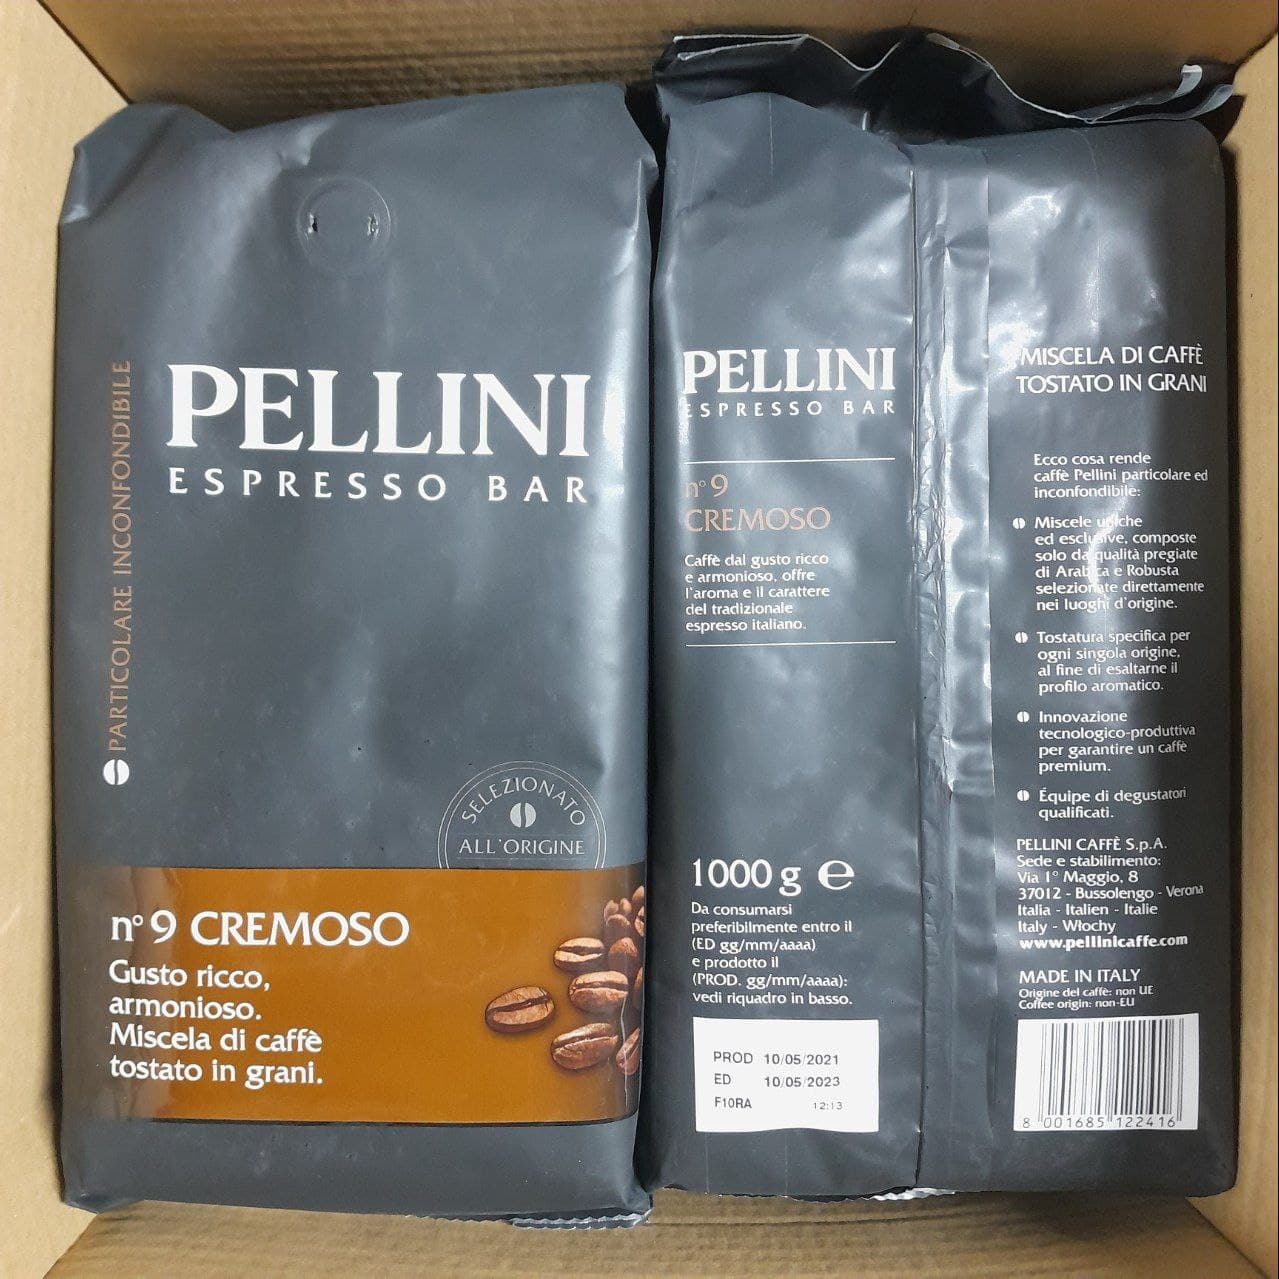 Зерновой кофе "PELLINI" Espresso Bar Cremoso